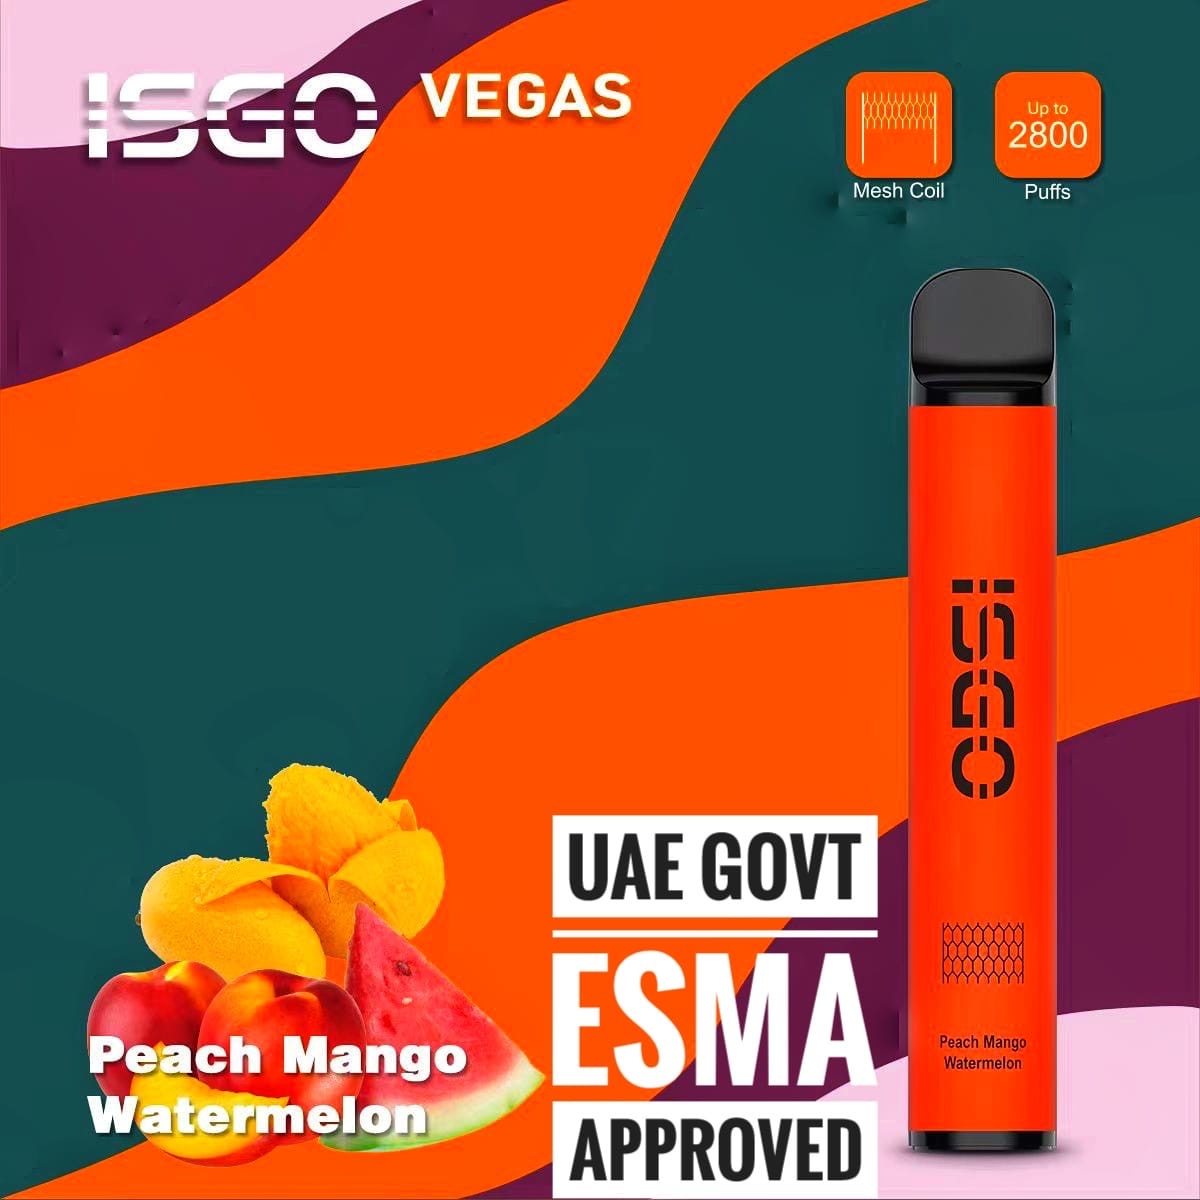 Isgo Vegas  2800 puffs disposable vape